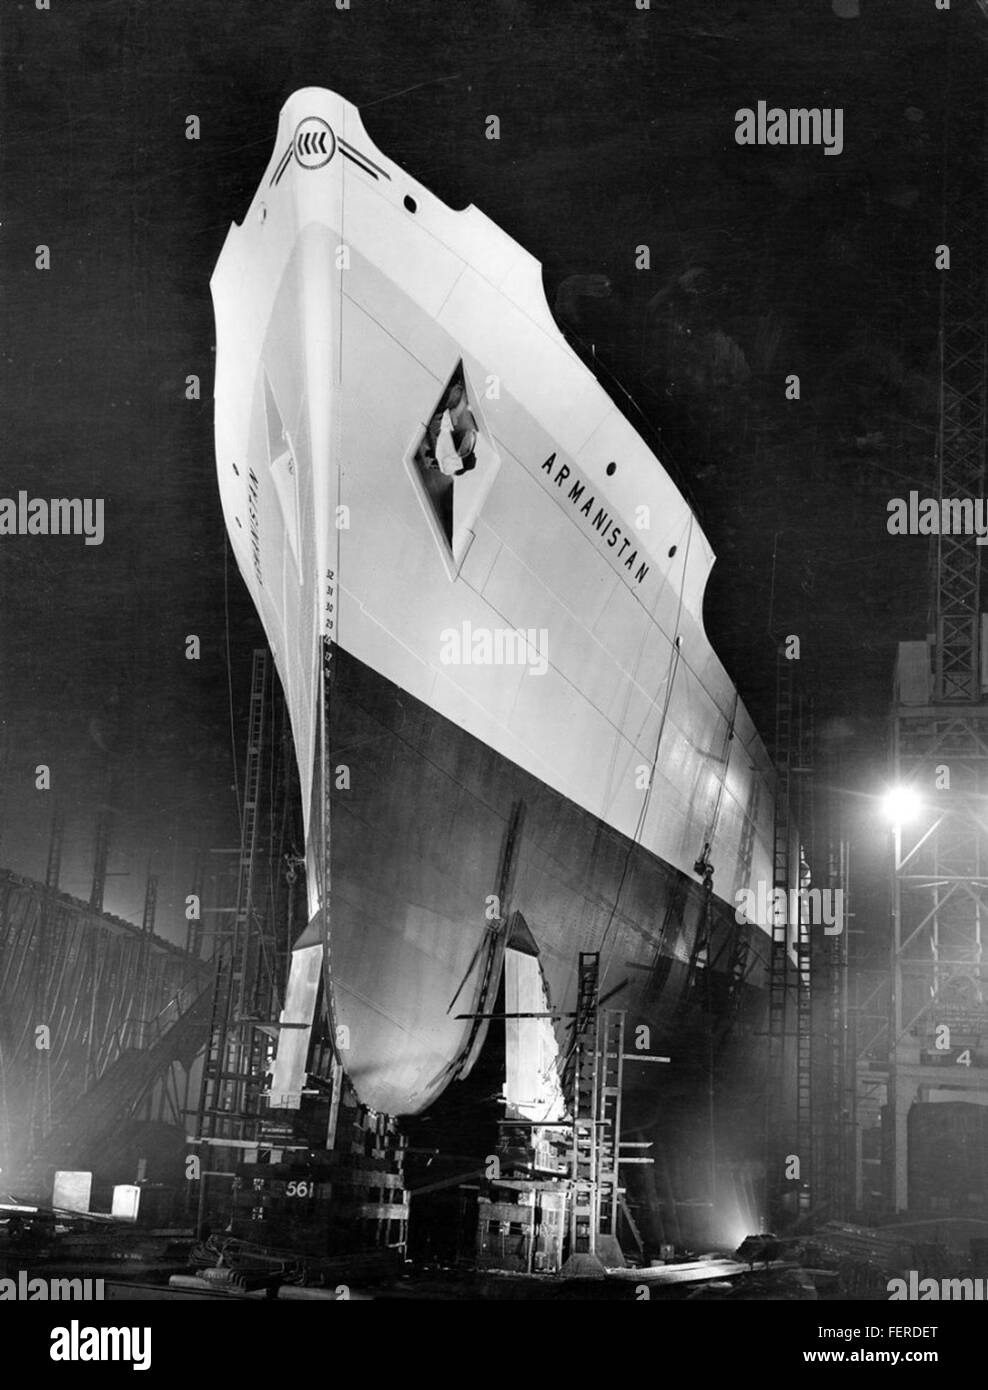 La nave cargo 'Armanistan' durante la notte la nave cargo 'Armanistan' durante la notte Foto Stock